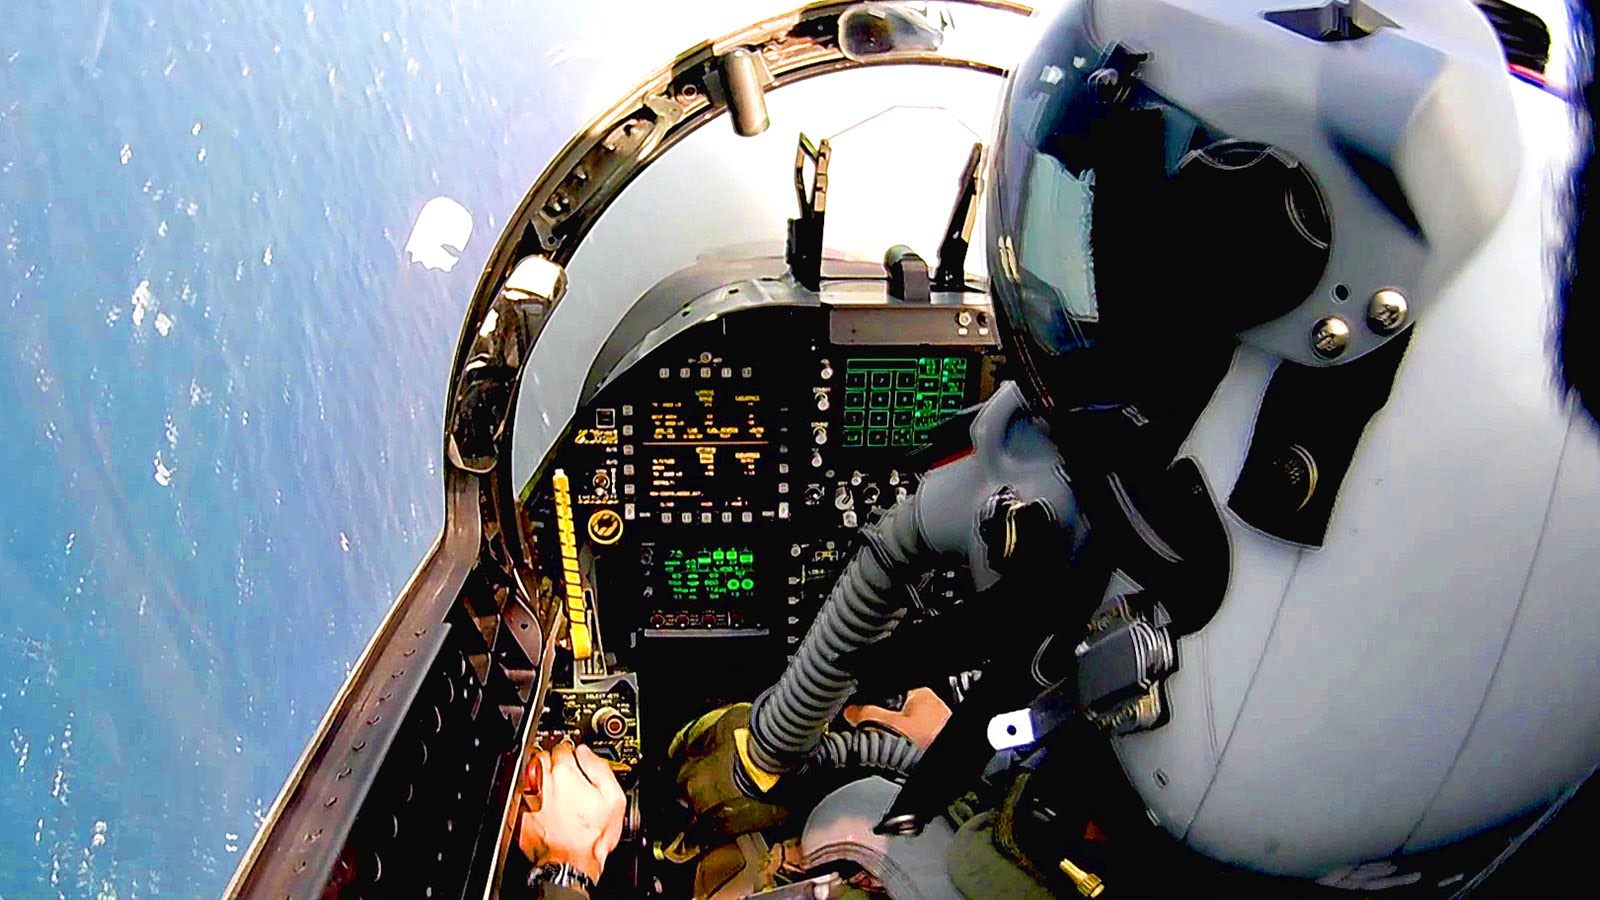 Βίντεο από το πιλοτήριο: Το F/A-18E Super Hornet σε ελιγμούς σε χαμηλό ύψος